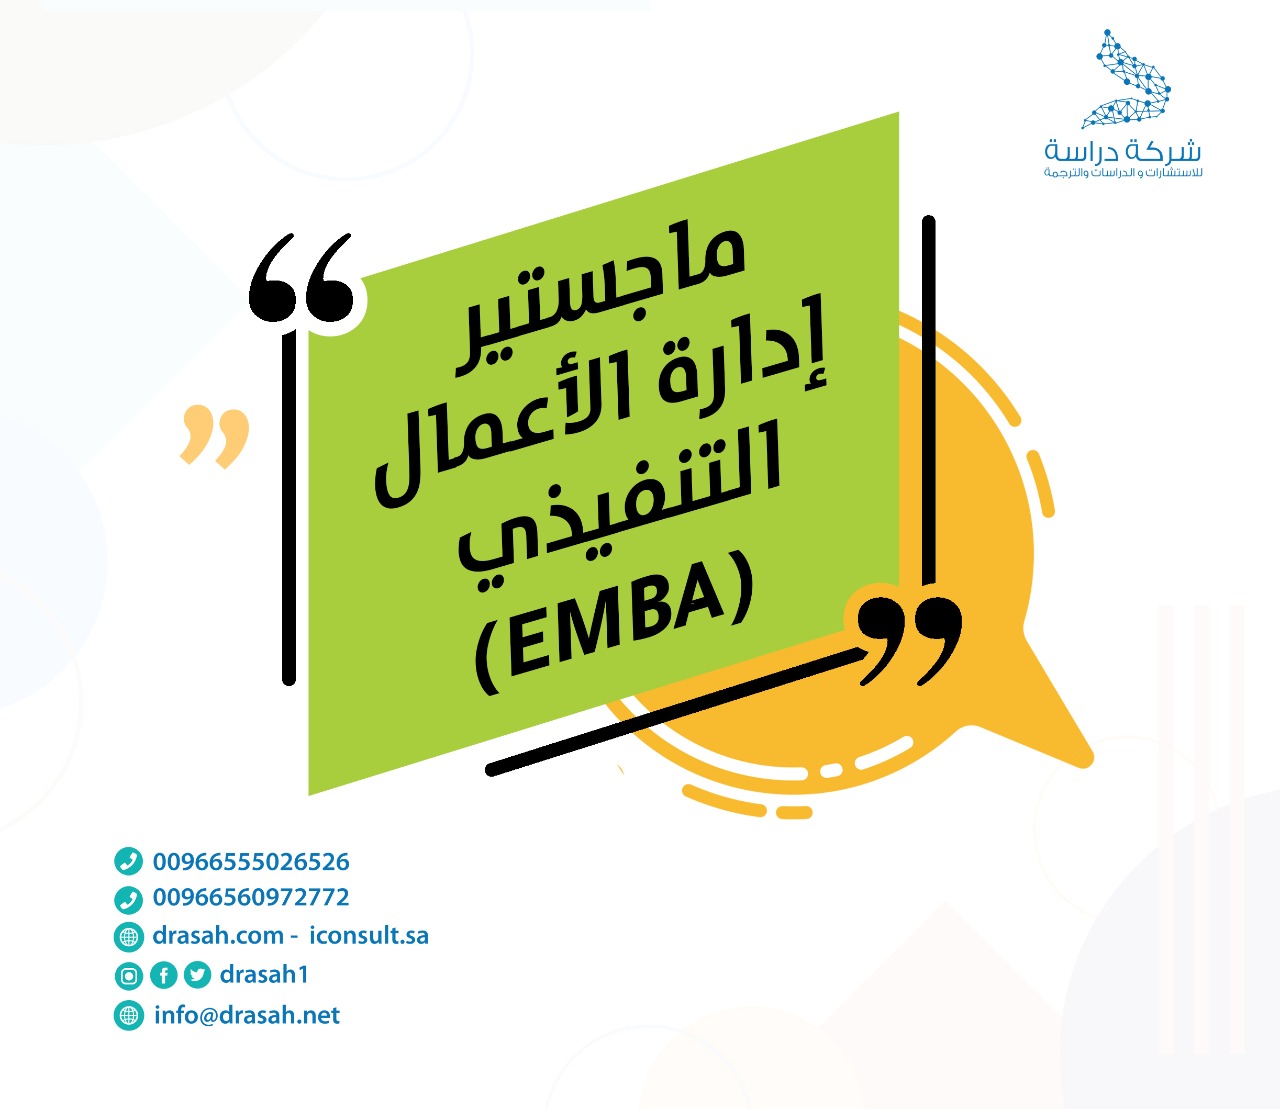 ماجستير إدارة الأعمال التنفيذي (EMBA)